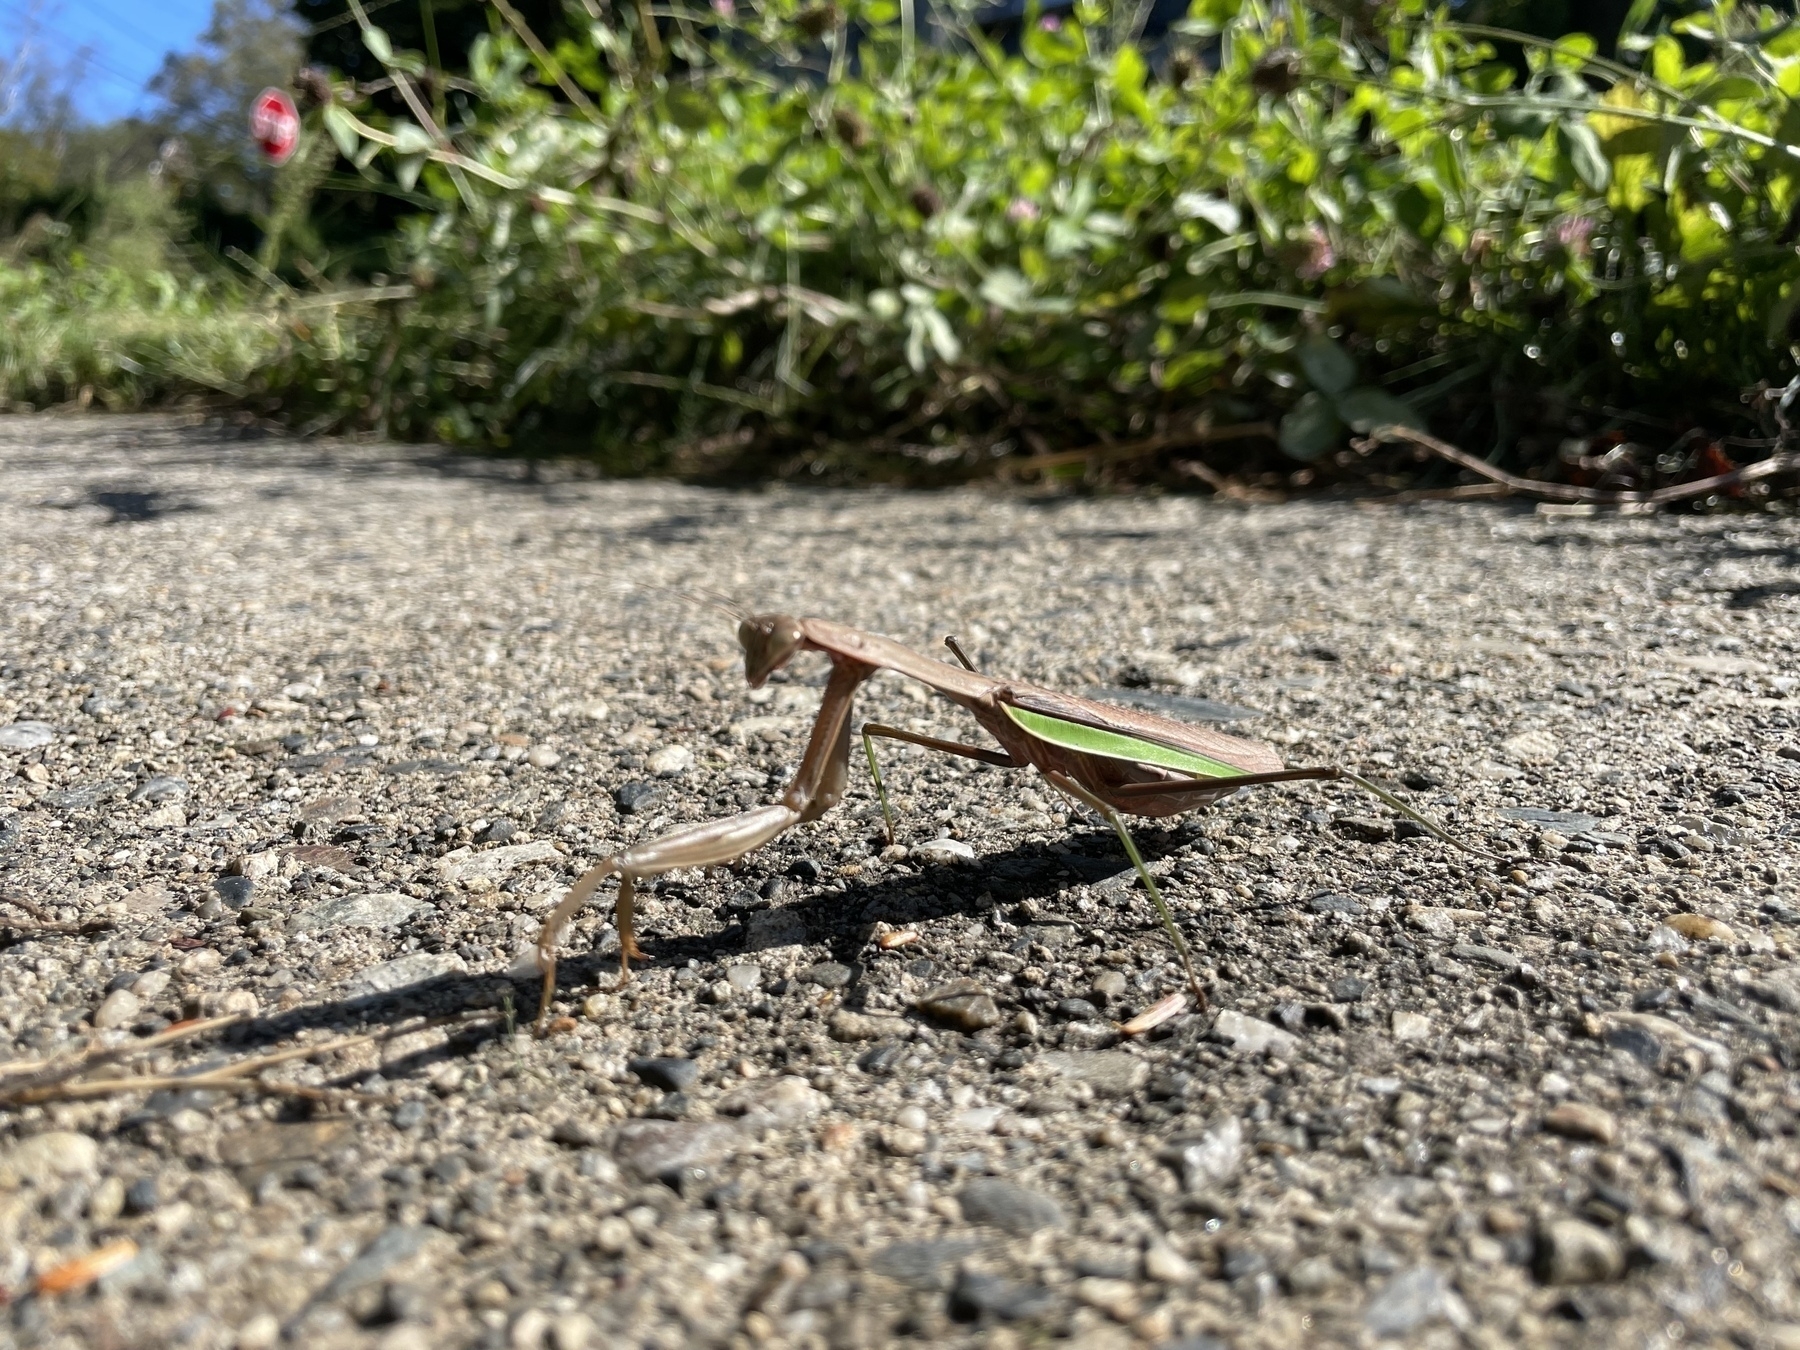 Praying mantis on the sidewalk 